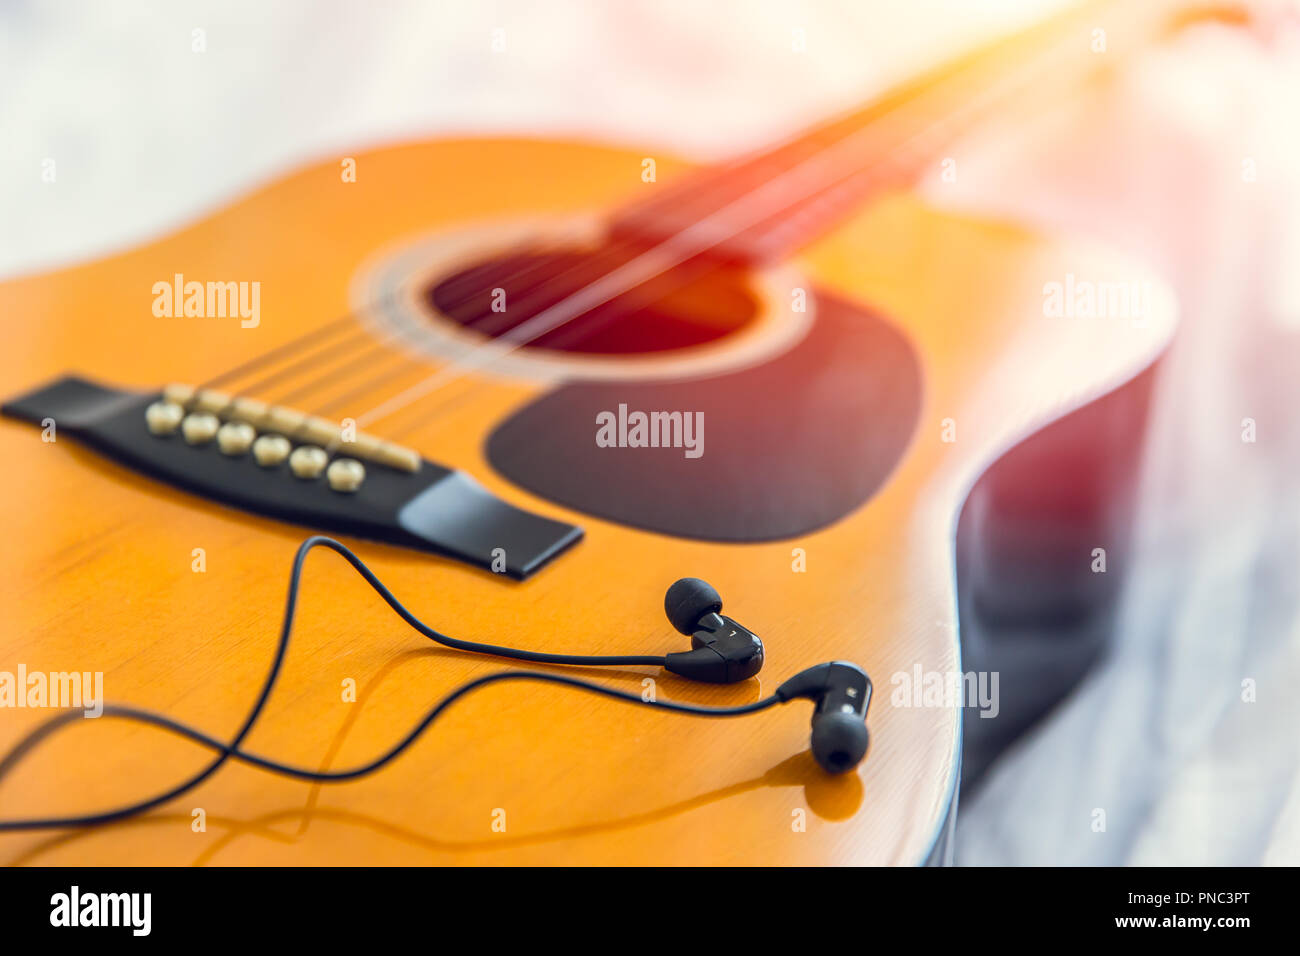 Das Hören und spielen die Musik mit Gitarre, glückliche Zeit mit Song Konzept entspannen. closeup Holz folk Gitarre mit Ohrhörer Kopfhörer. Stockfoto